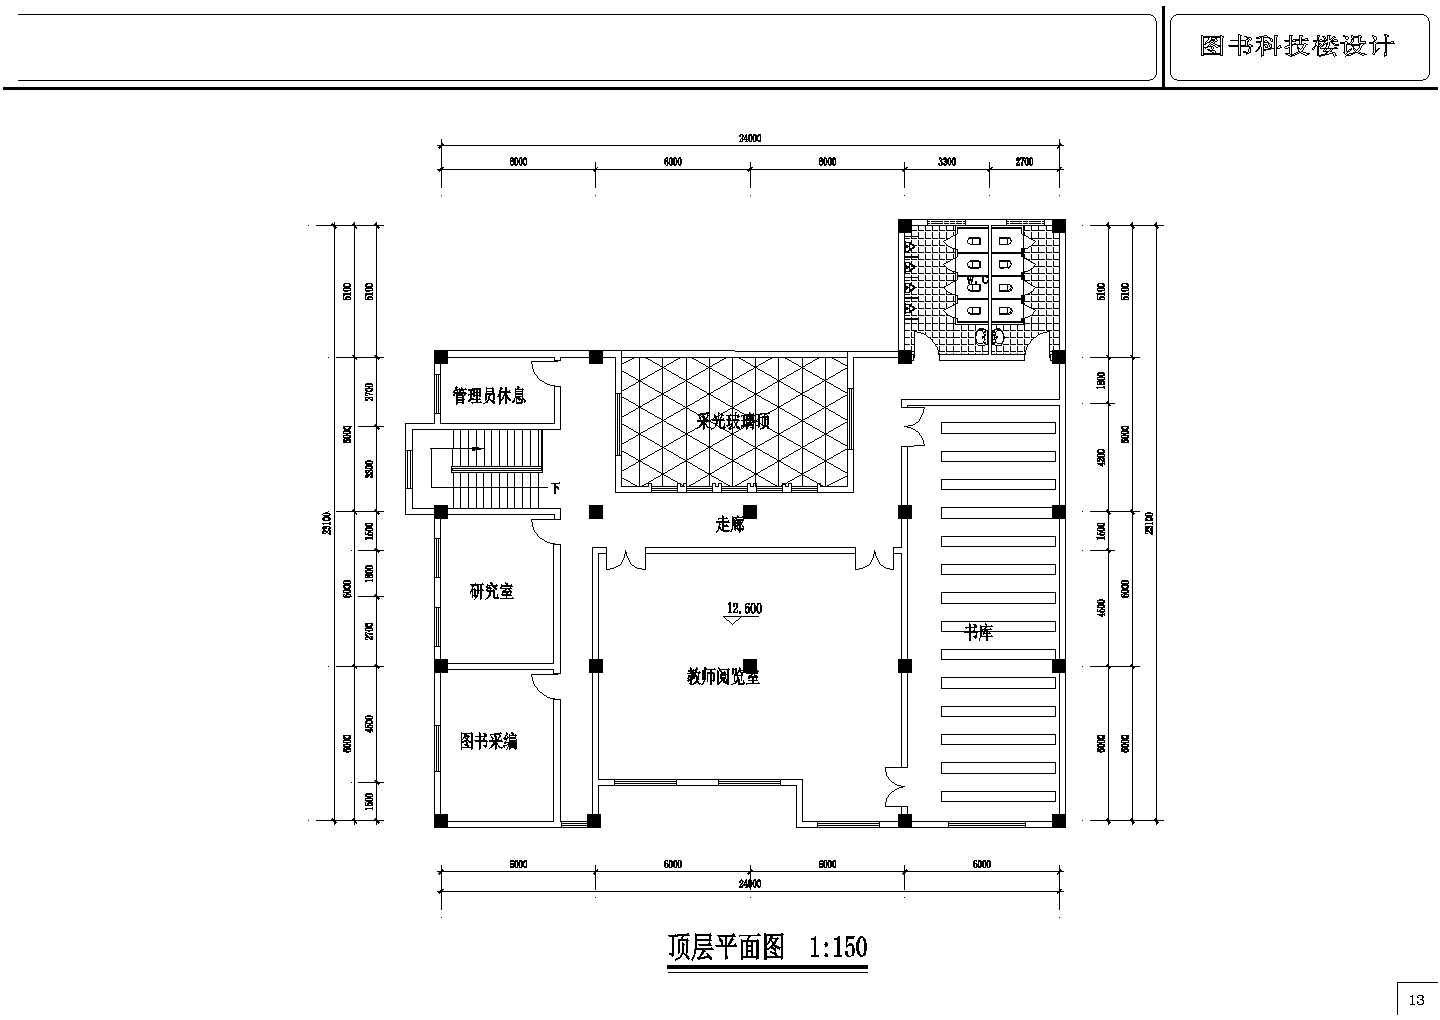 某学校图书科技楼建筑方案设计图